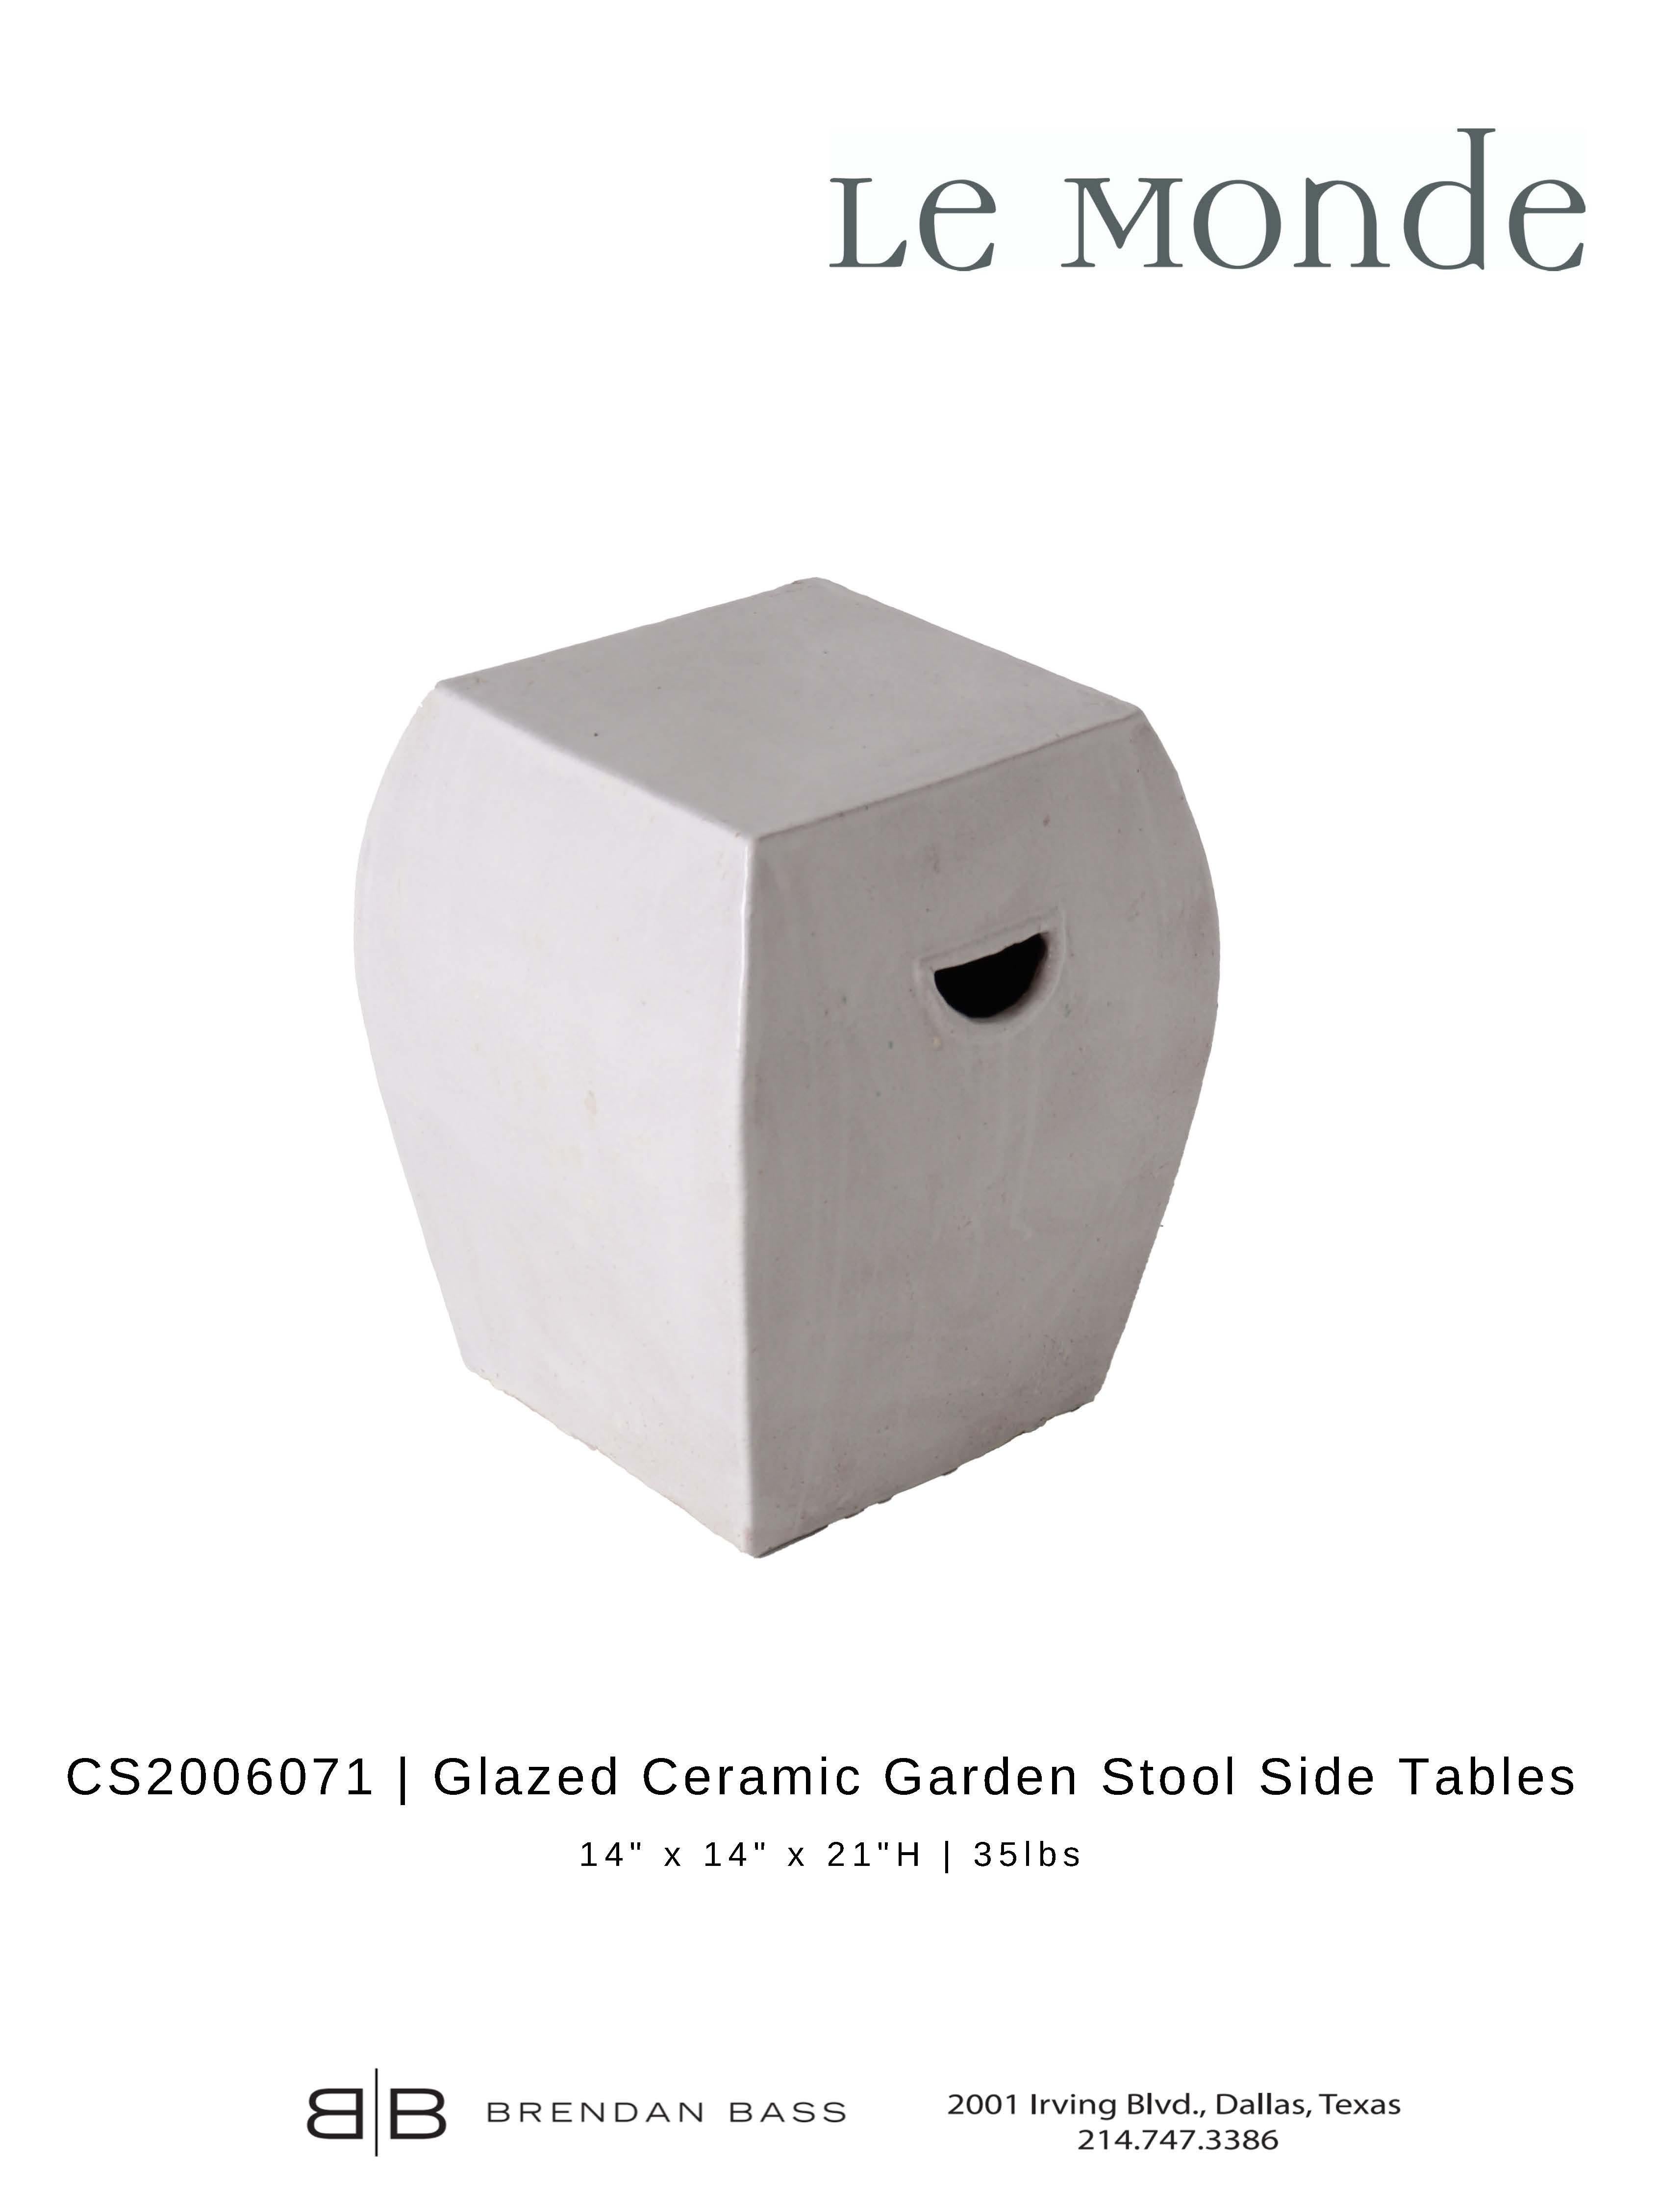 Organic Modern Glazed Ceramic Garden Stool Side Tables For Sale